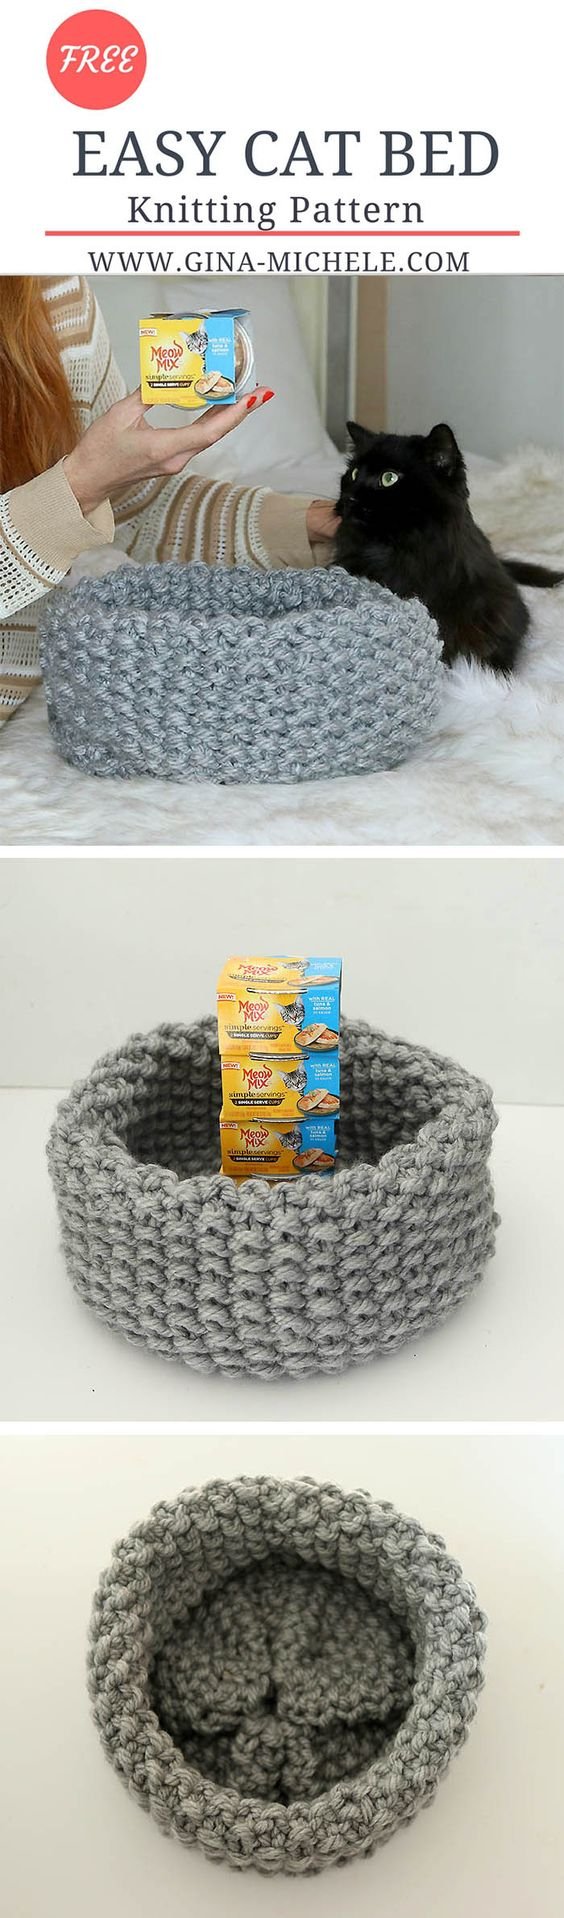 Crochet Cat Bed Pattern Free 15 Crochet Pet Bed Ideas